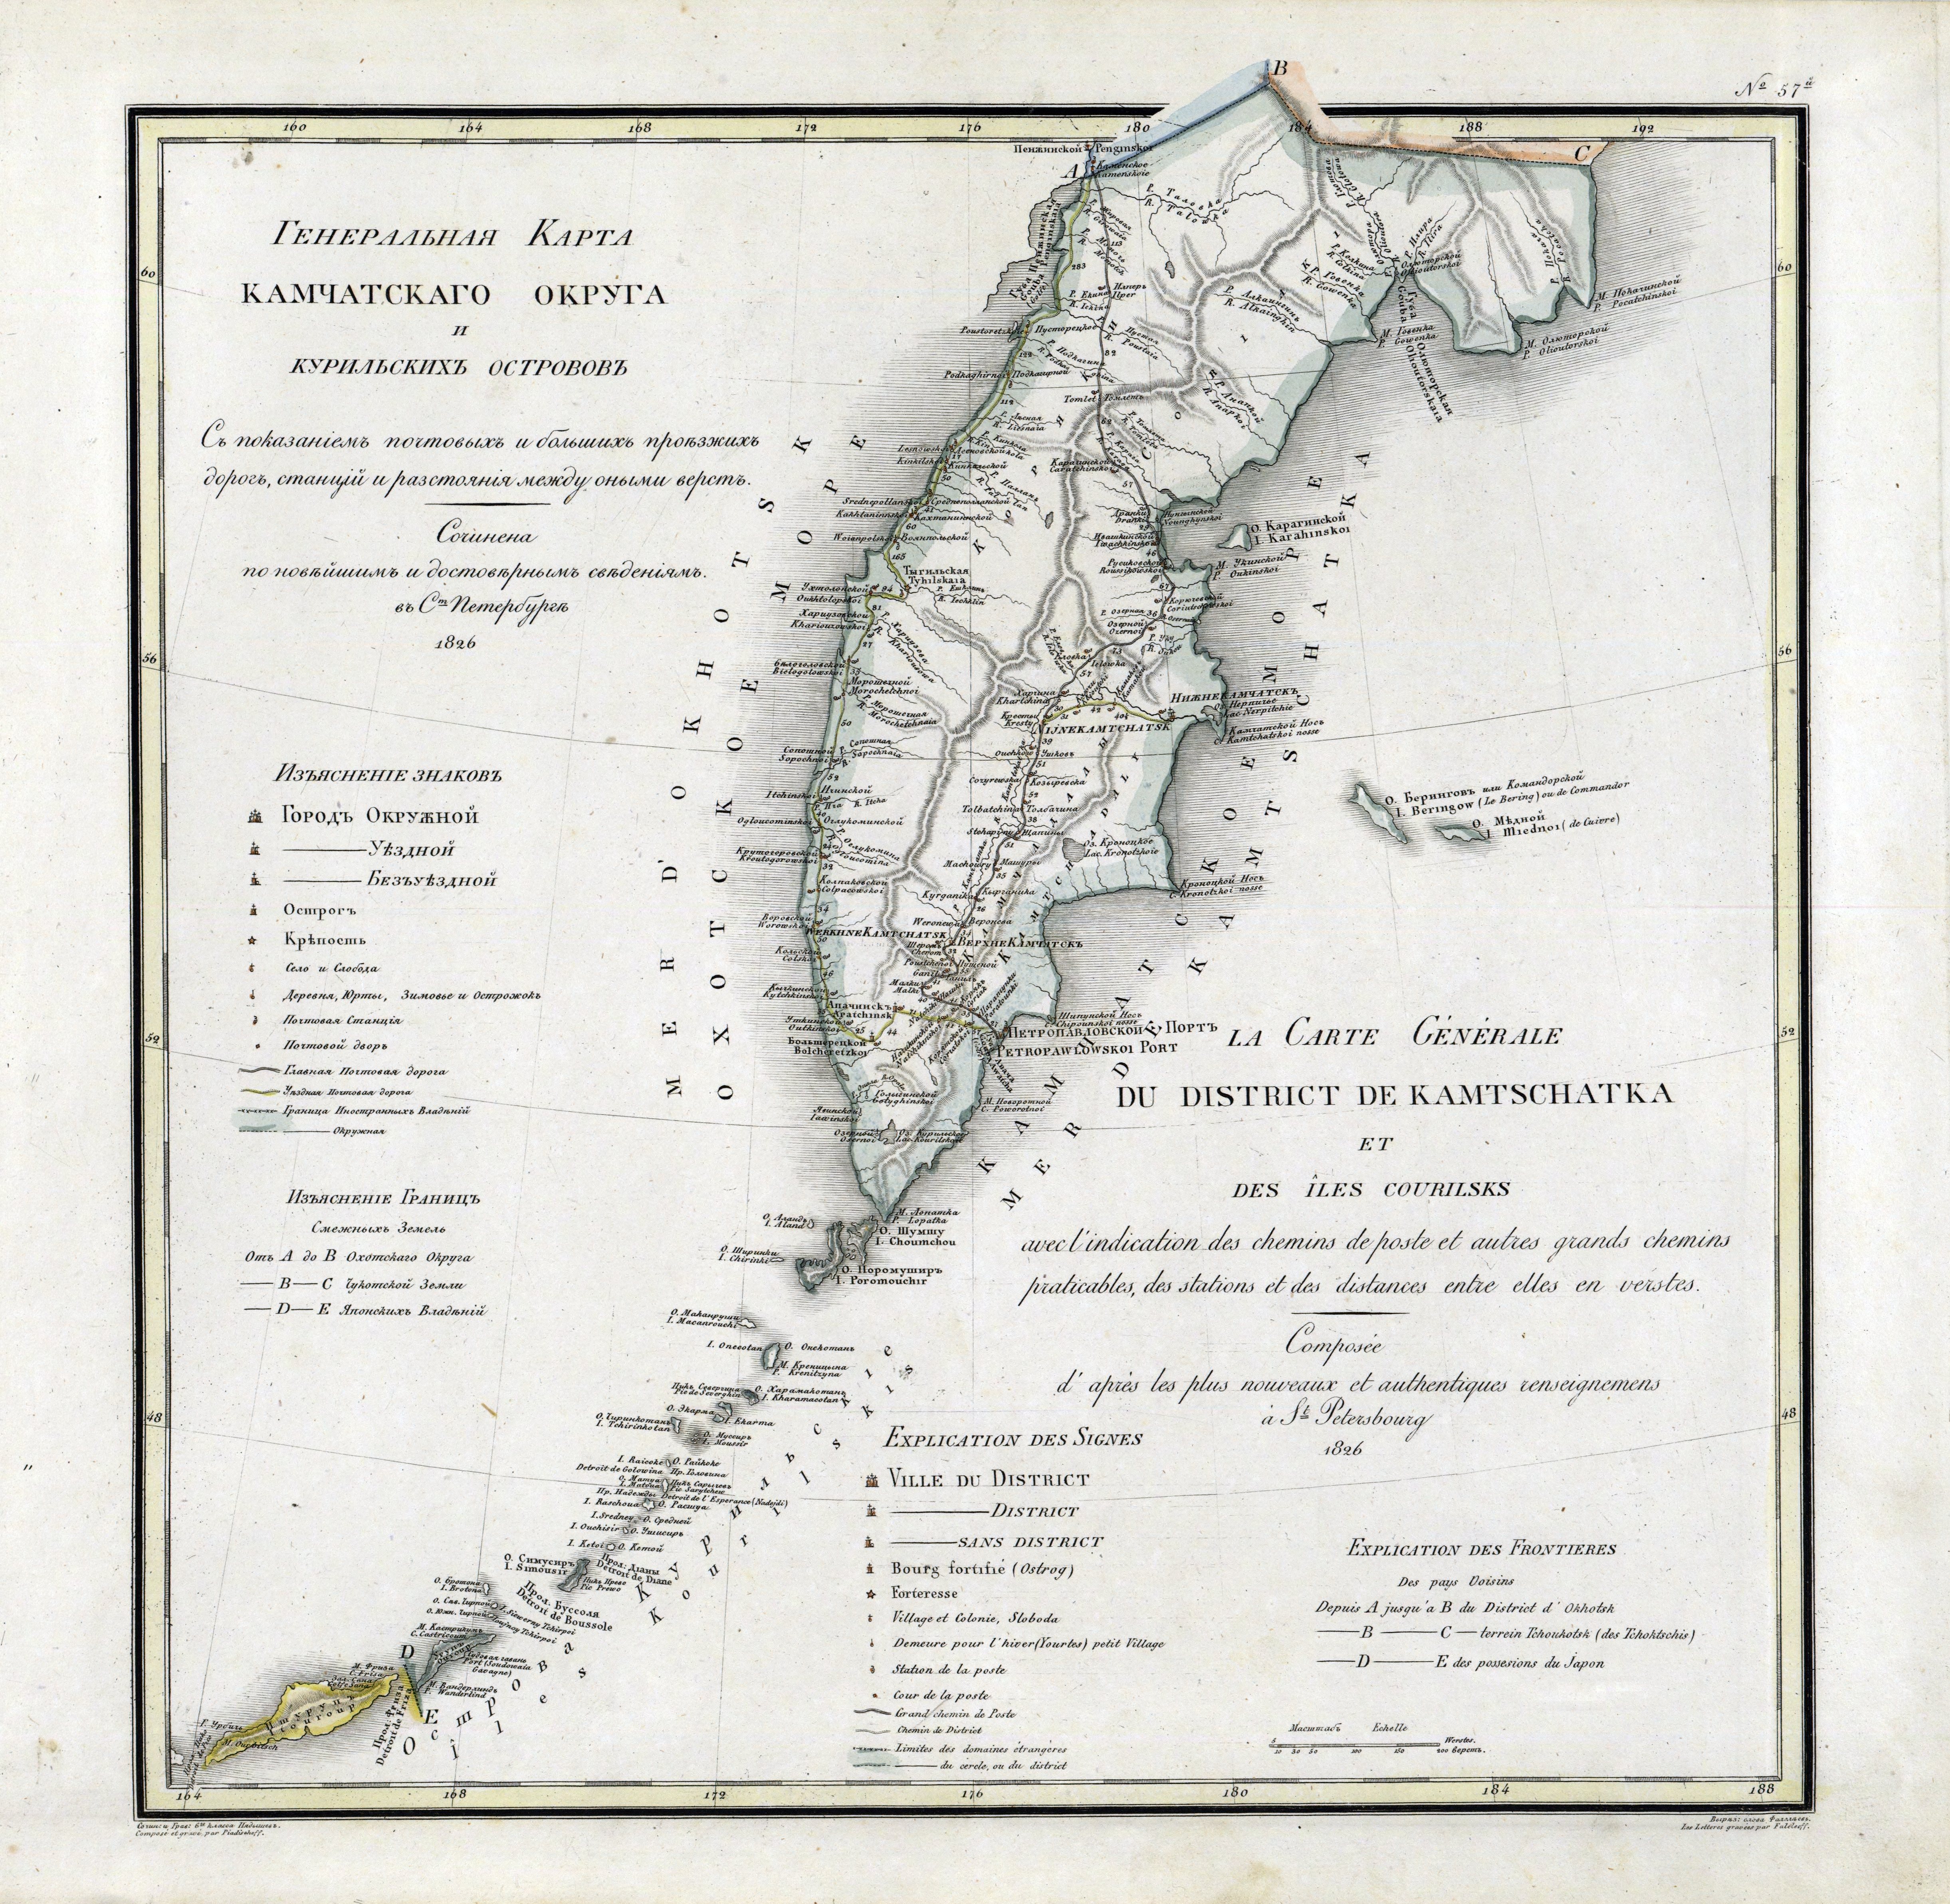 Kamchatsky okrug and Kuril islands1826